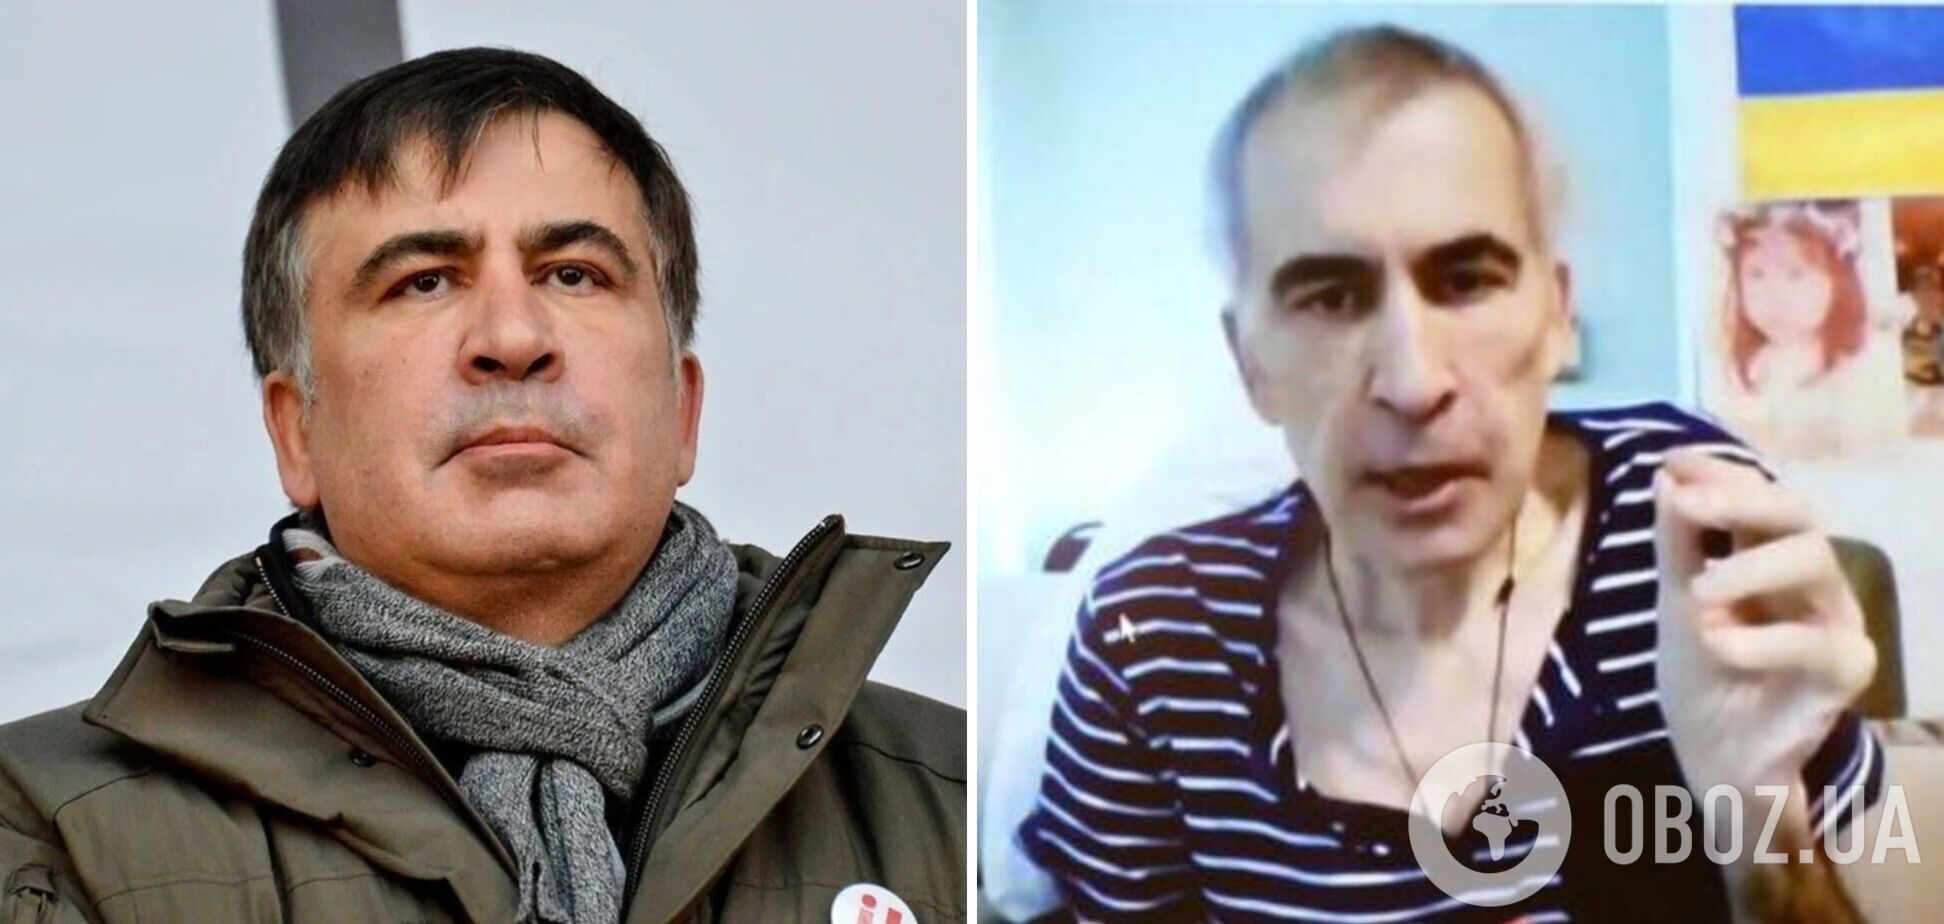 МИД Украины выразило протест послу Грузии из-за ухудшения состояния Саакашвили и предложило дипломату вернуться в Тбилиси